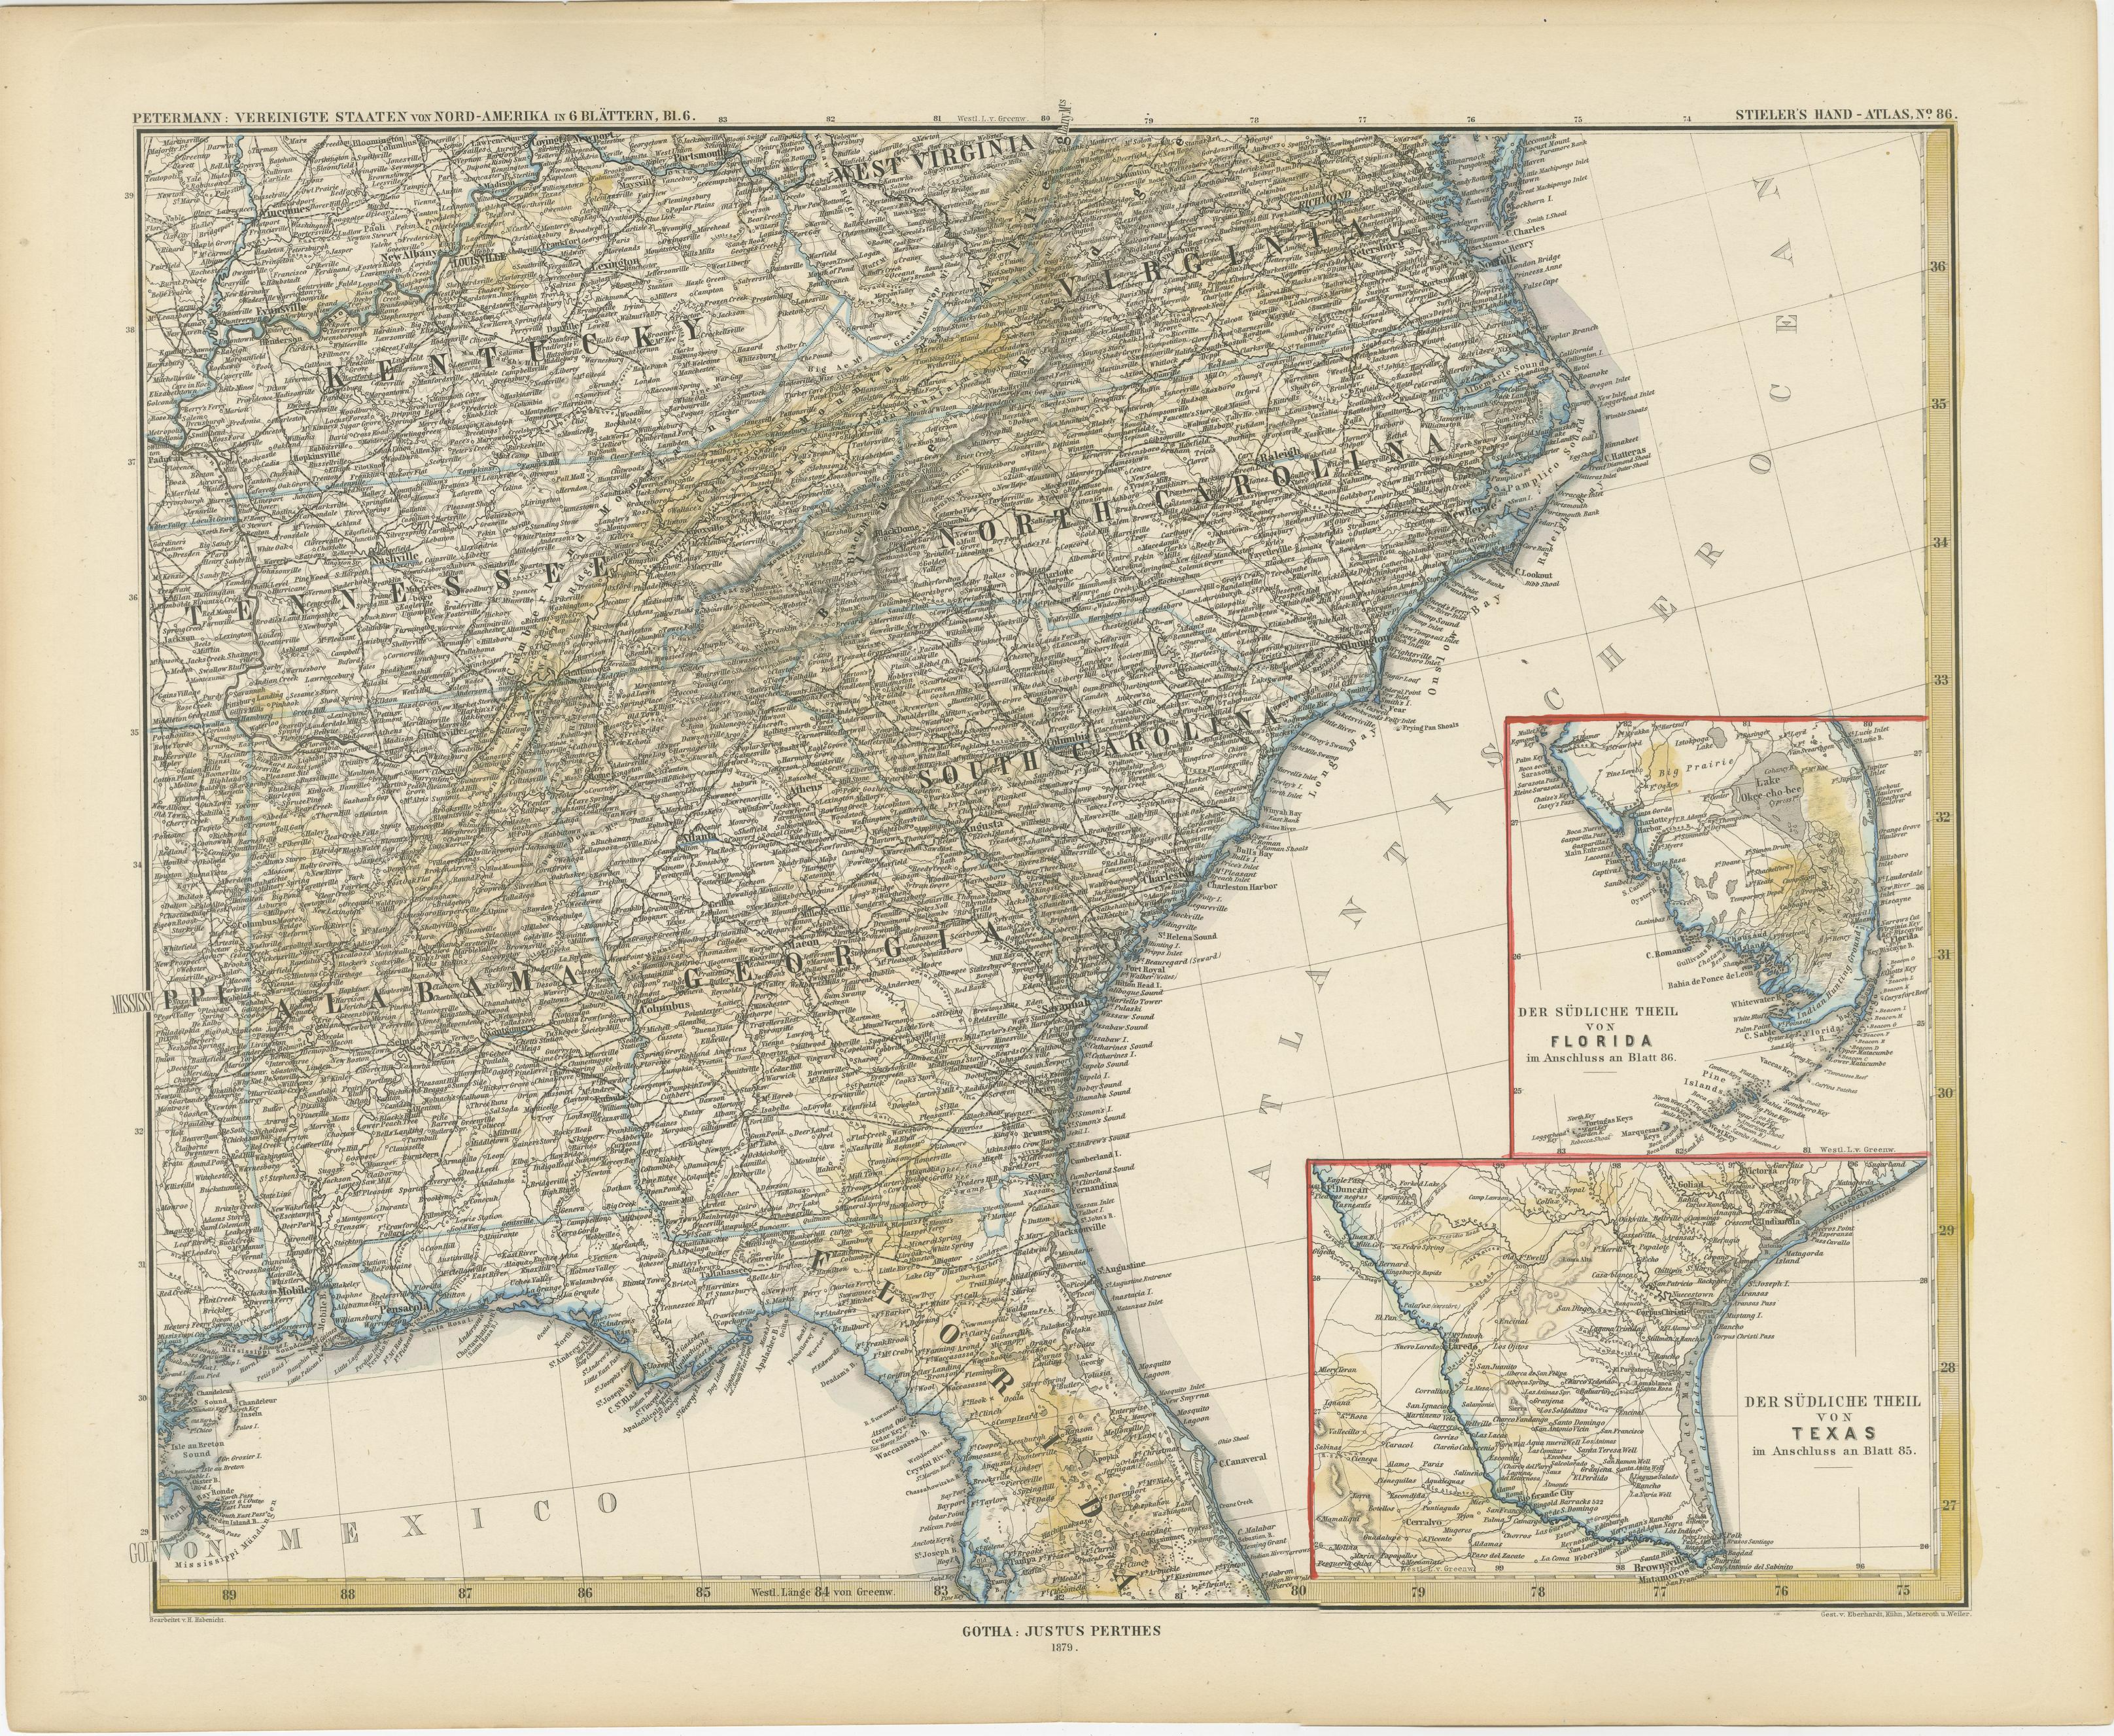 Carte ancienne d'une partie des États-Unis montrant l'Alabama, la Géorgie, la Caroline du Nord, la Caroline du Sud, le Tennessee, le Kentucky, la Virginie et une partie de la Floride. Avec des cartes en médaillon de la partie sud de la Floride et de